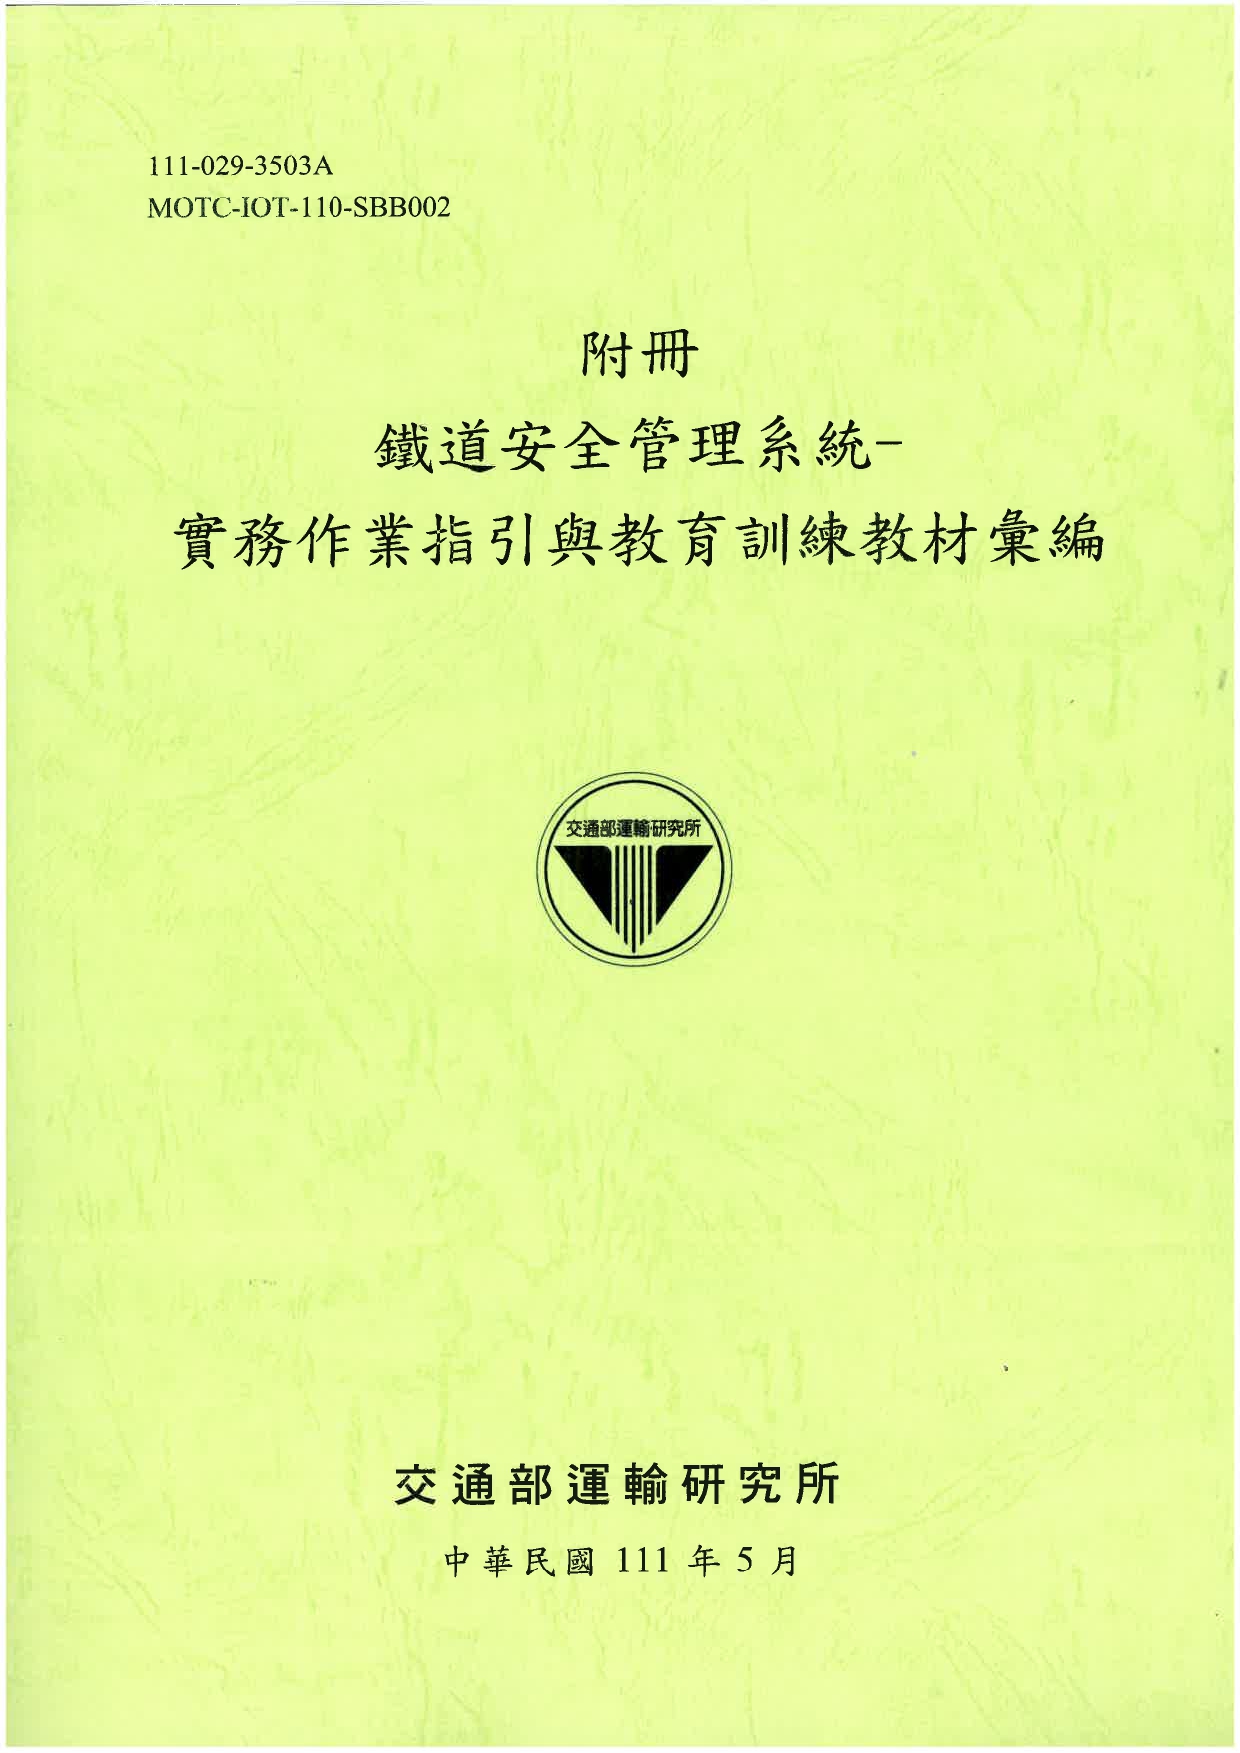 附冊 鐵道安全管理系統-實務作業指引與教育訓練教材彙編 